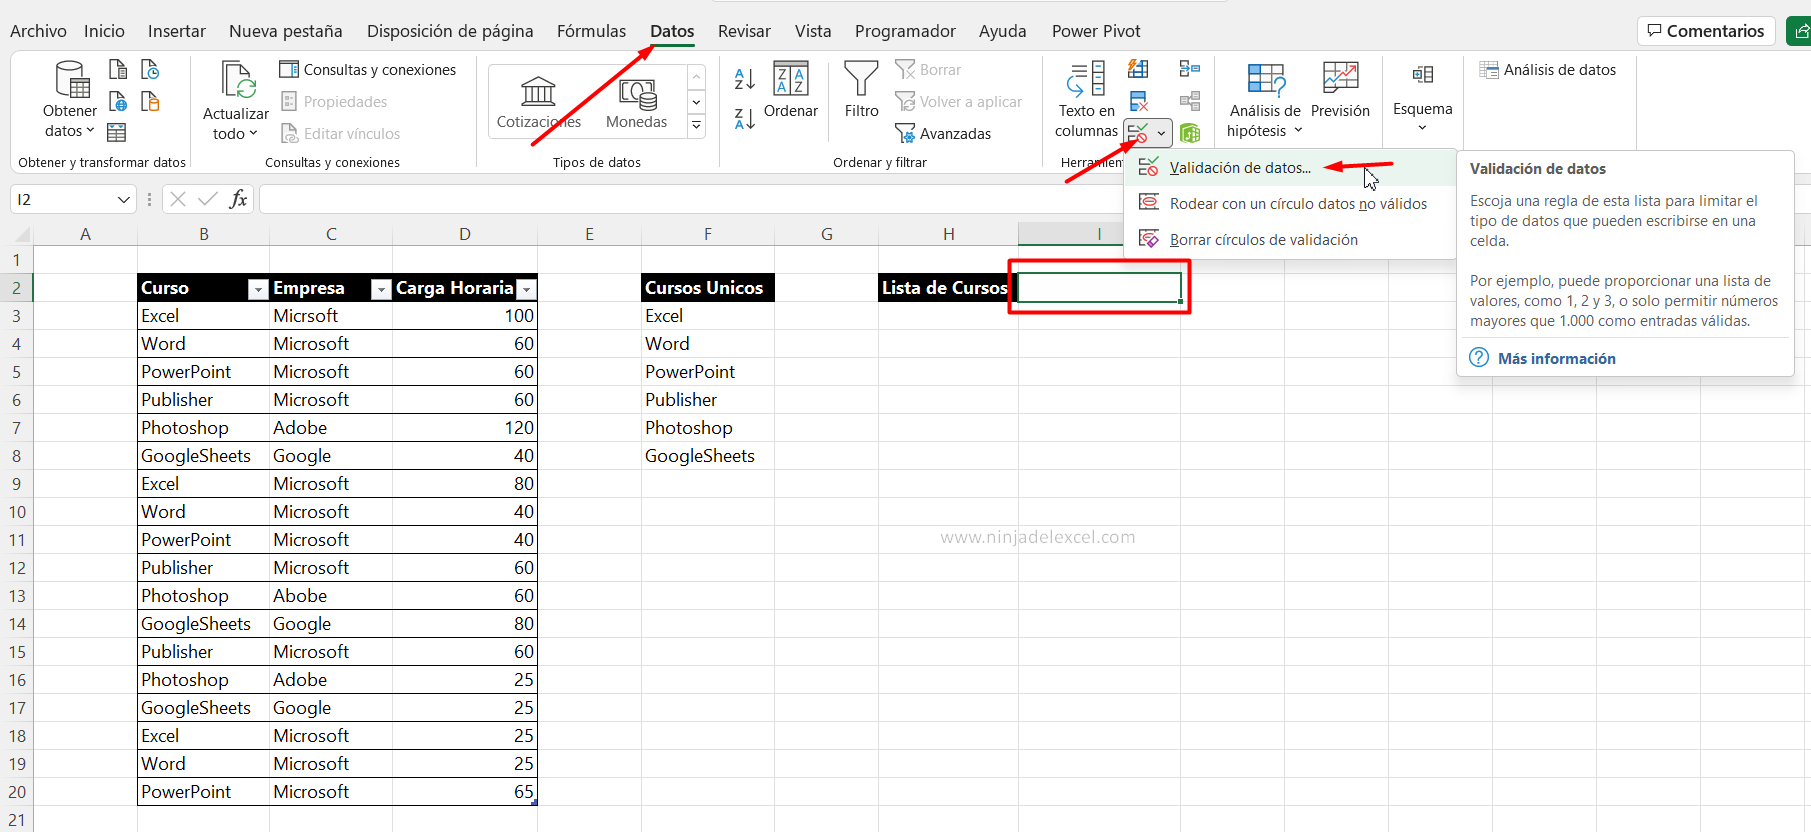 Aprenda el poder de # en Excel